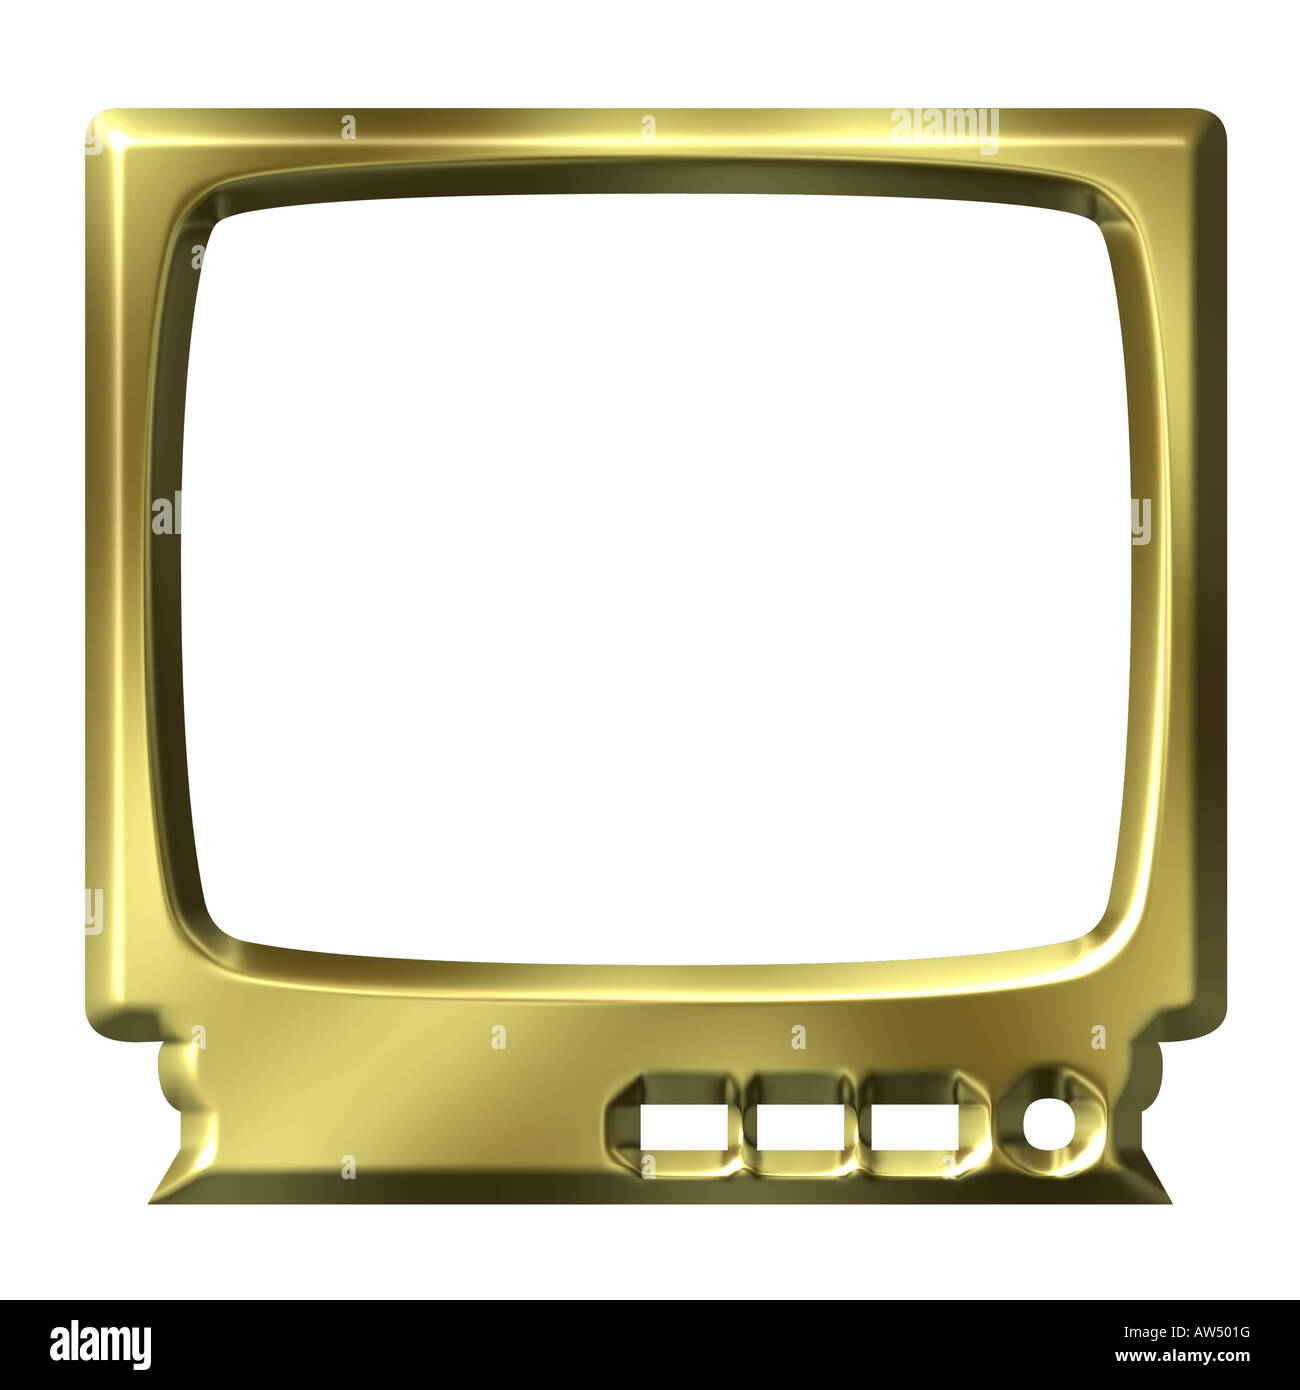 broadcast, television, TV set, models, tesla 4002A, Czechoslovakia, 1954  Stock Photo - Alamy